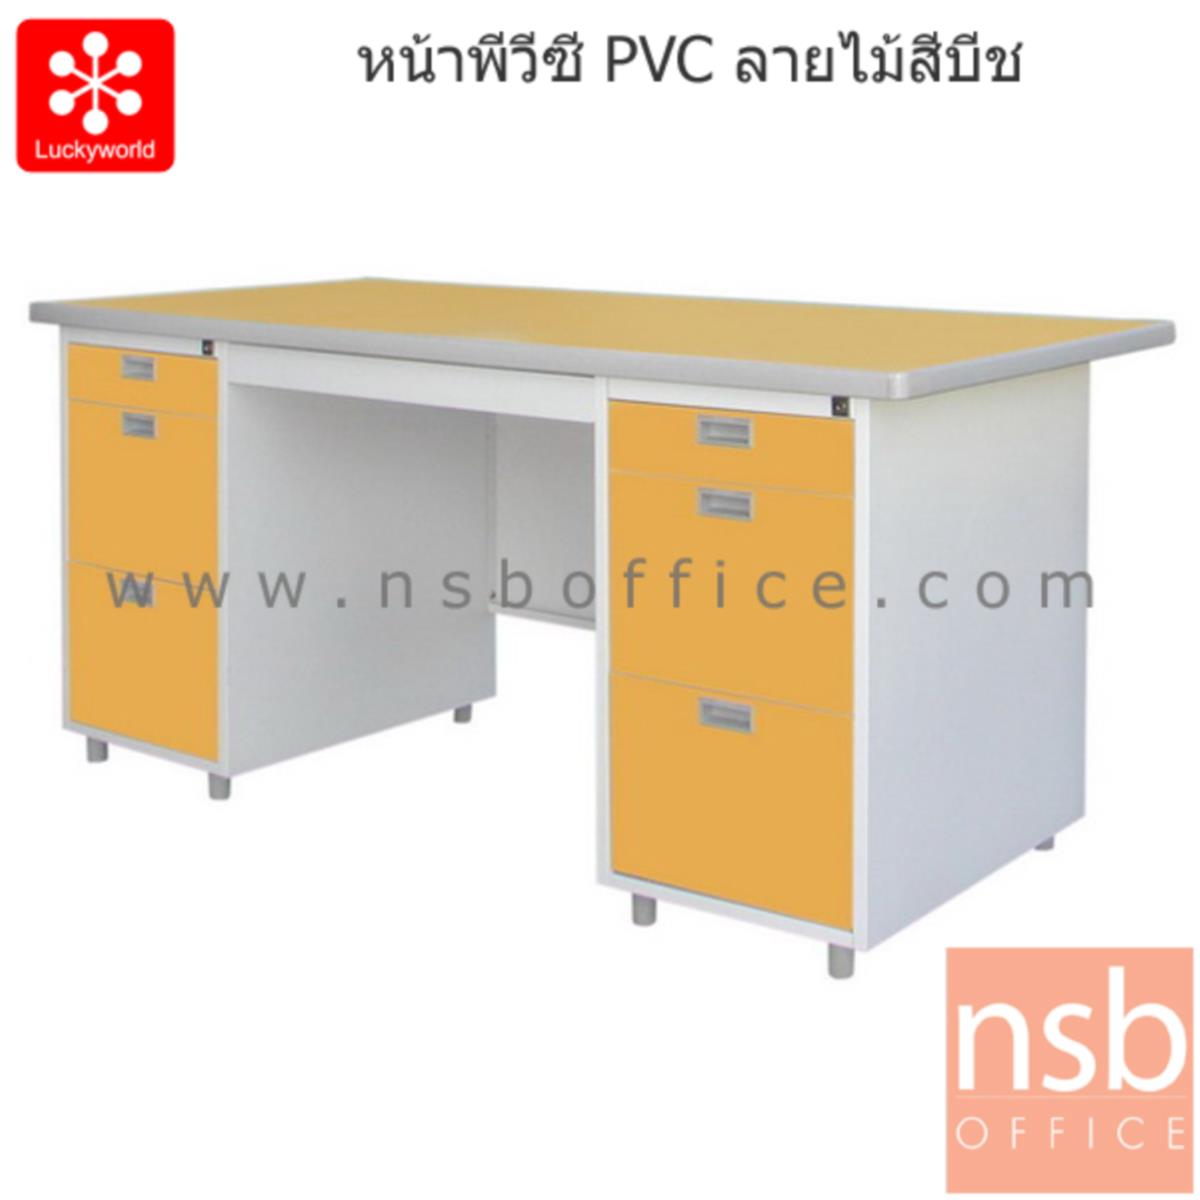 โต๊ะทำงานเหล็ก 7 ลิ้นชัก รุ่น DP-52-33 ขนาด 159.5W cm.  หน้าพีวีซี(PVC) 